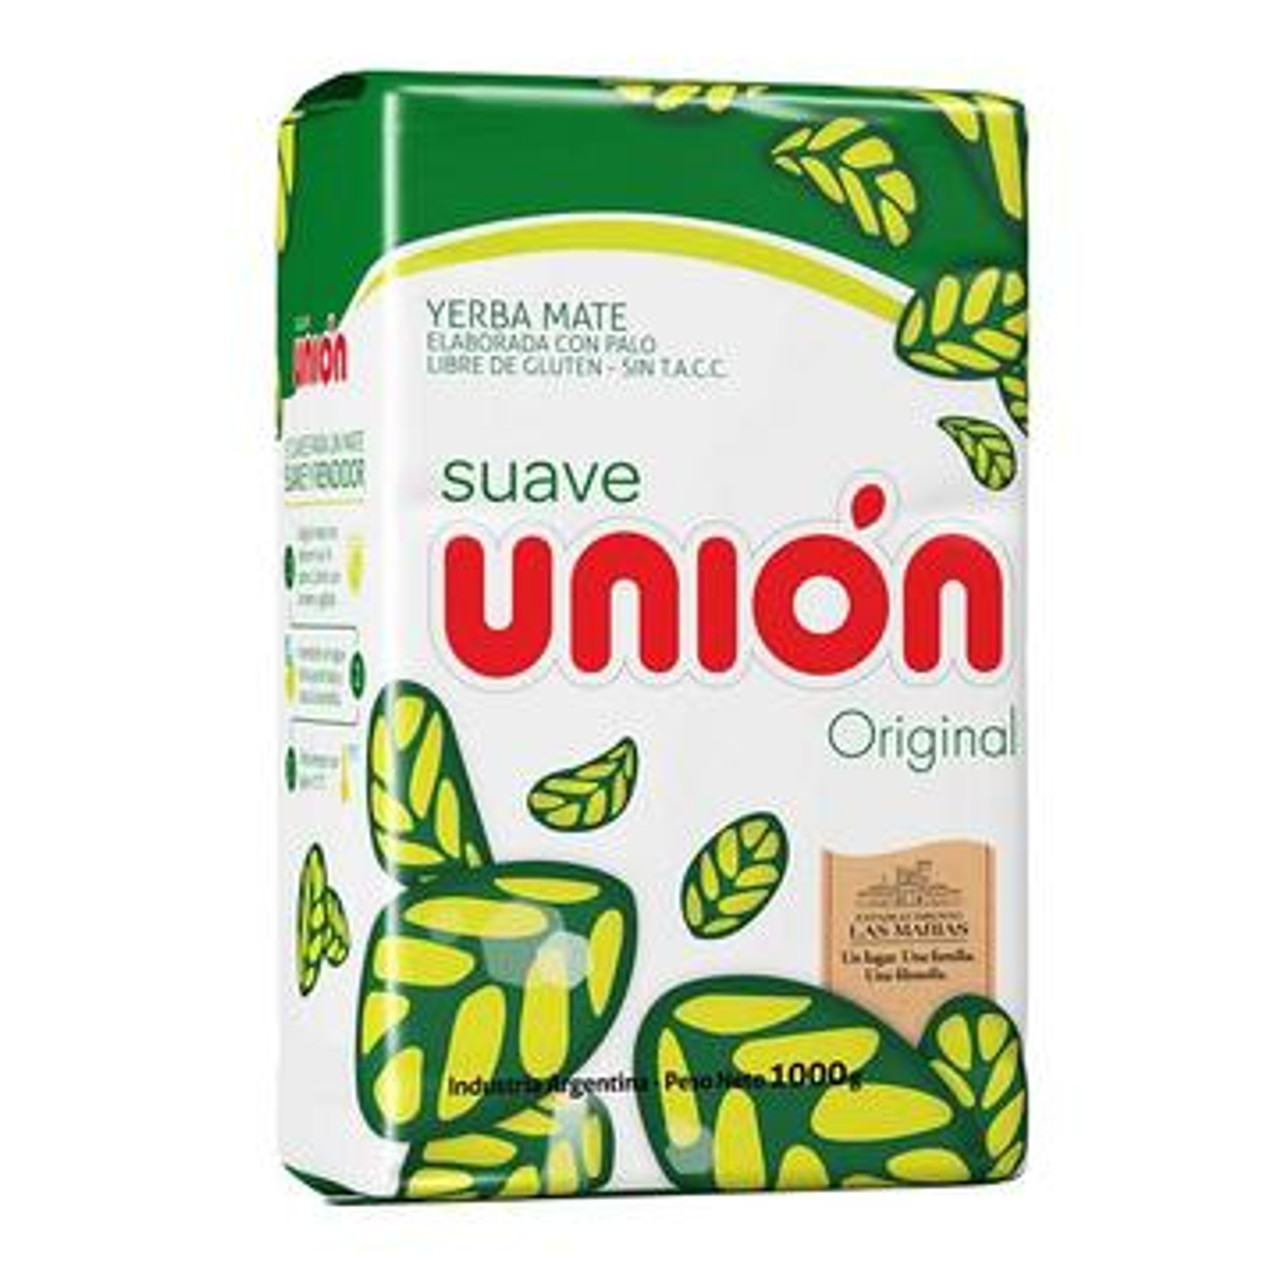 Unión Yerba Mate Suave Original, 1 kg / 2.2 lb